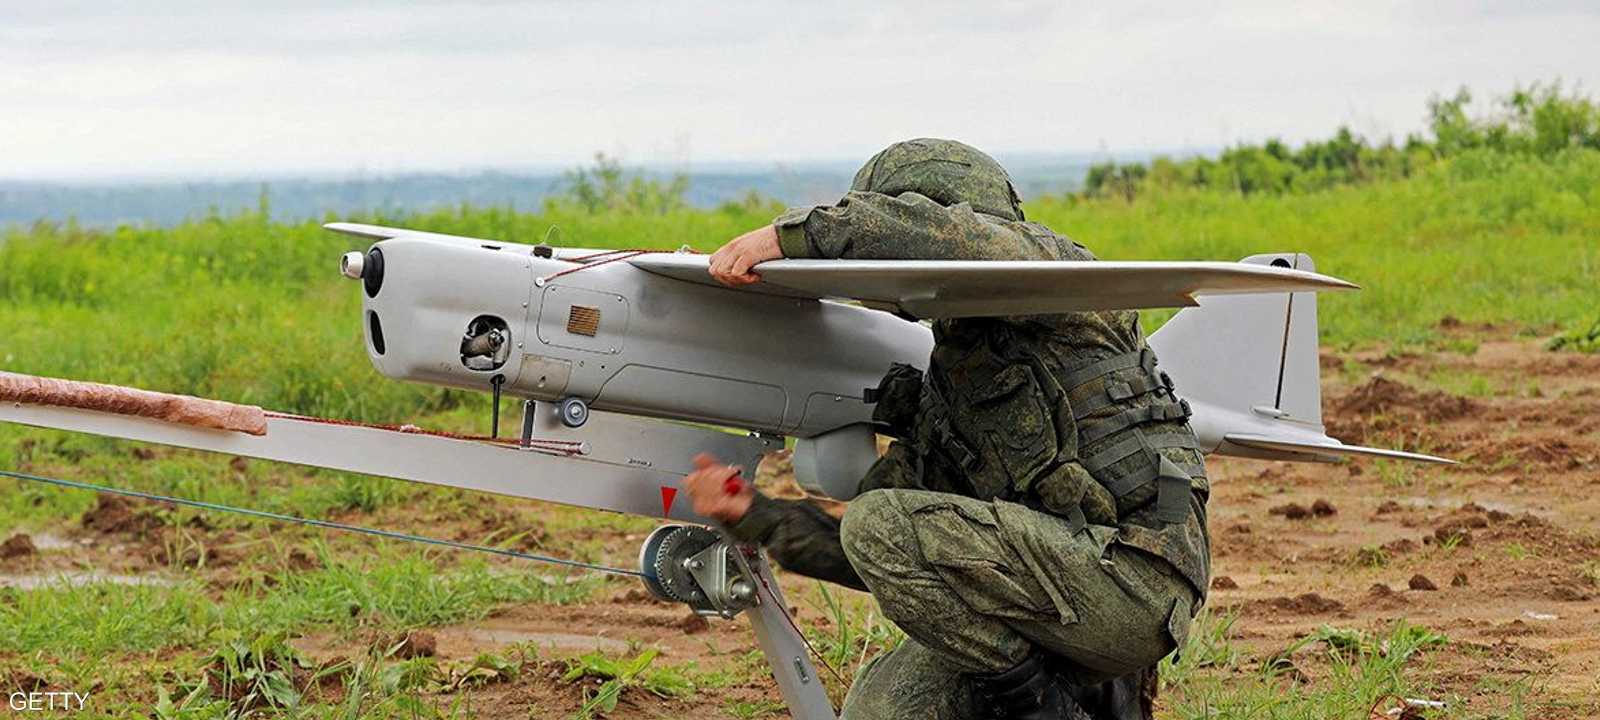 جندي روسي يطلق طائرة مسيرة "درون". أرشيف